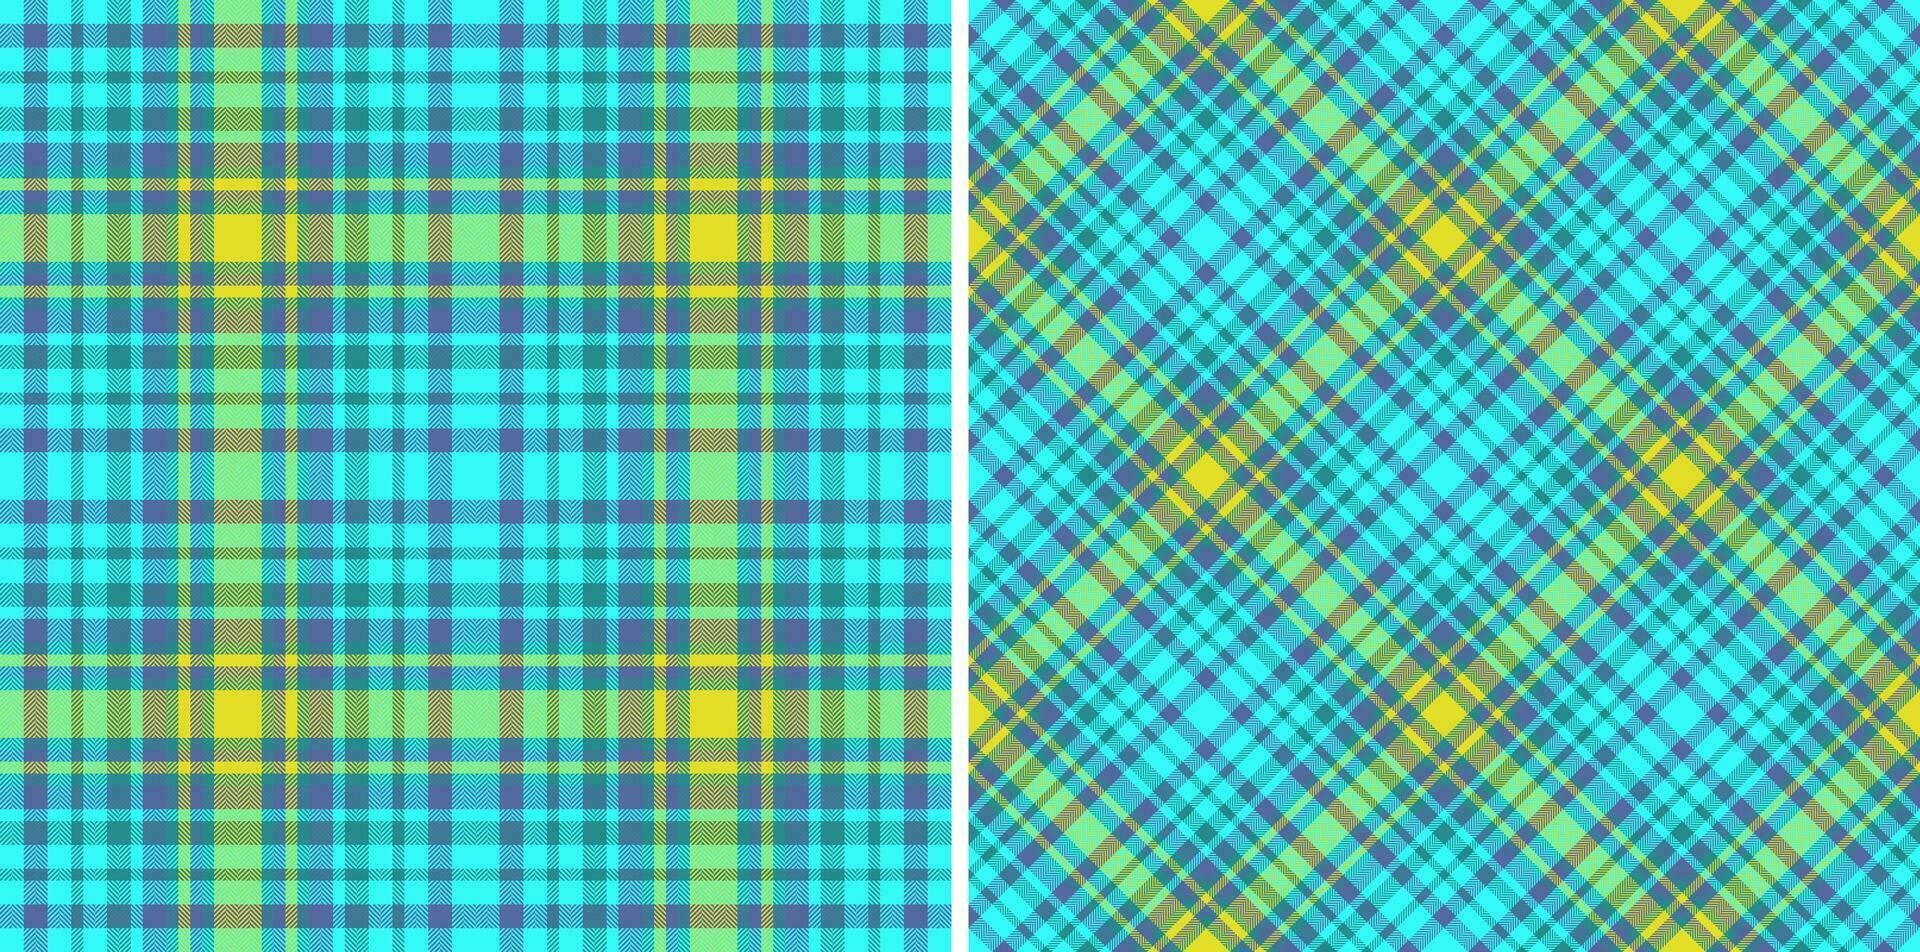 kleding stof patroon achtergrond van naadloos plaid controleren met een Schotse ruit vector structuur textiel.